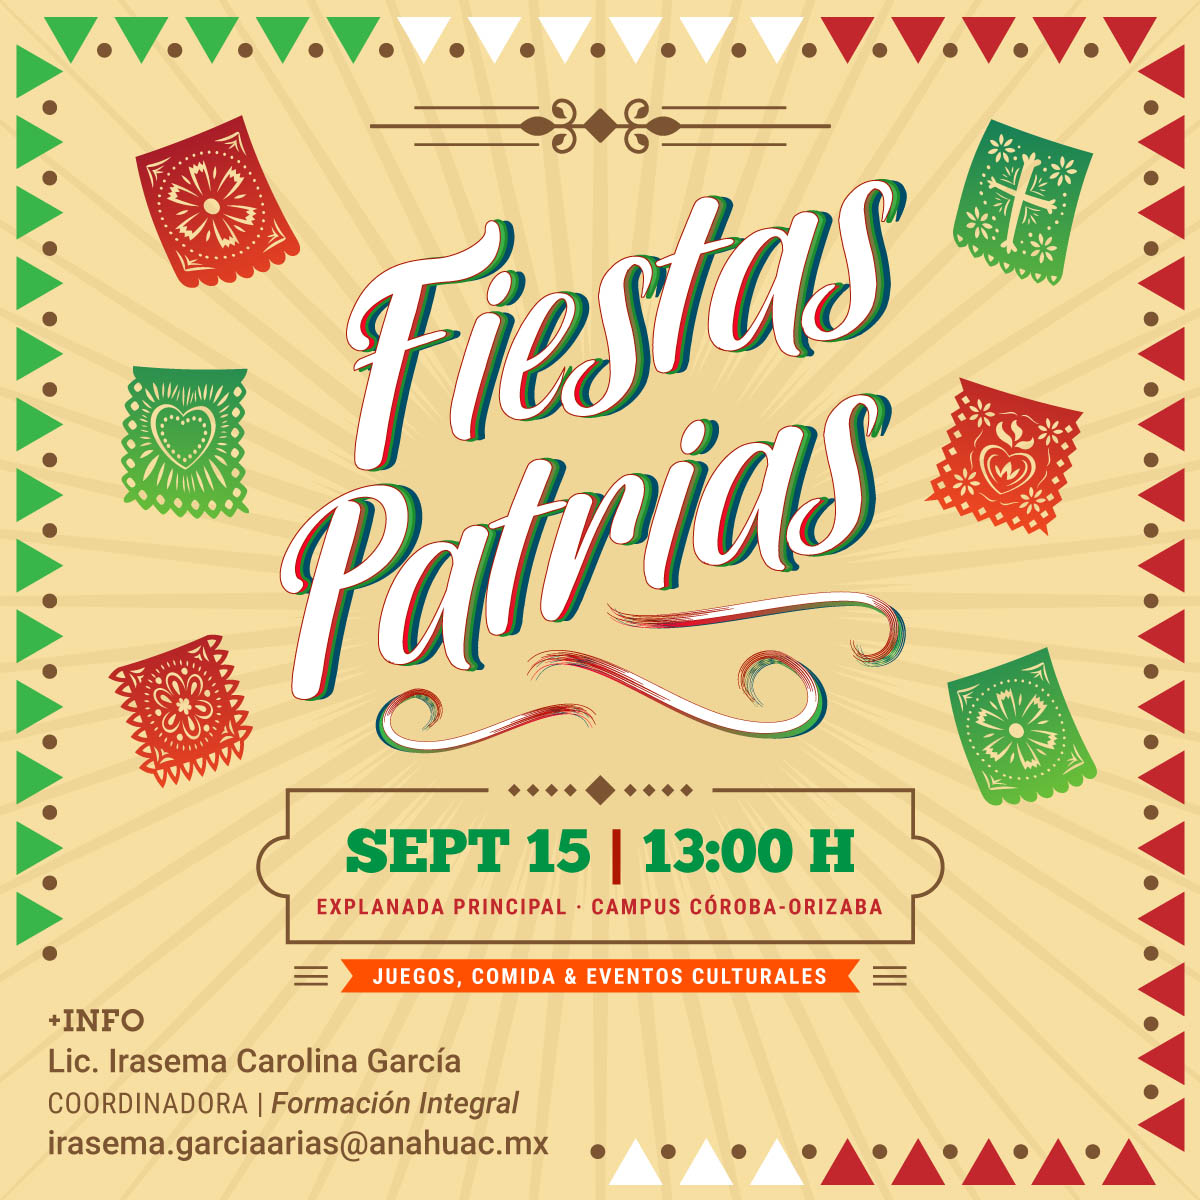 Fiestas Patrias: Campus Córdoba-Orizaba